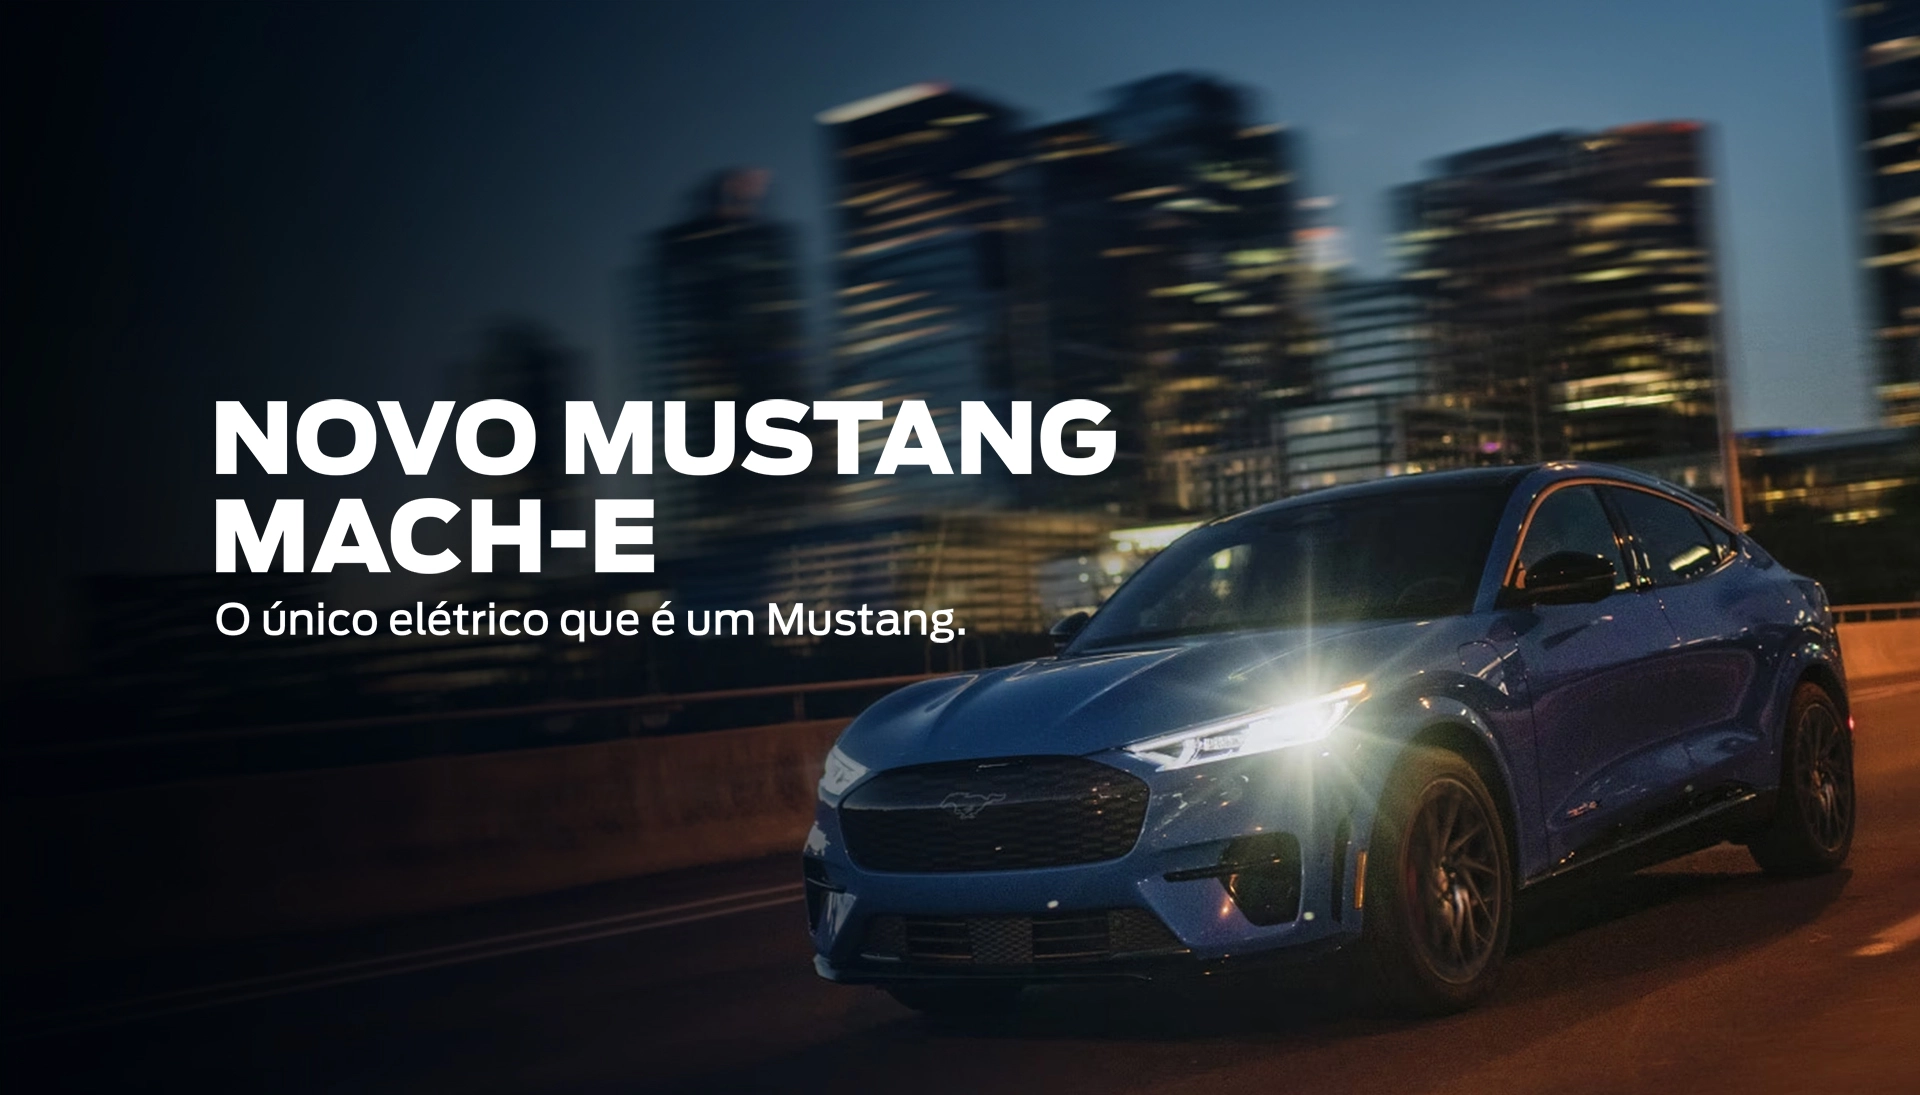 Novo Mustang Mach-E: o único elétrico que é um Mustang.